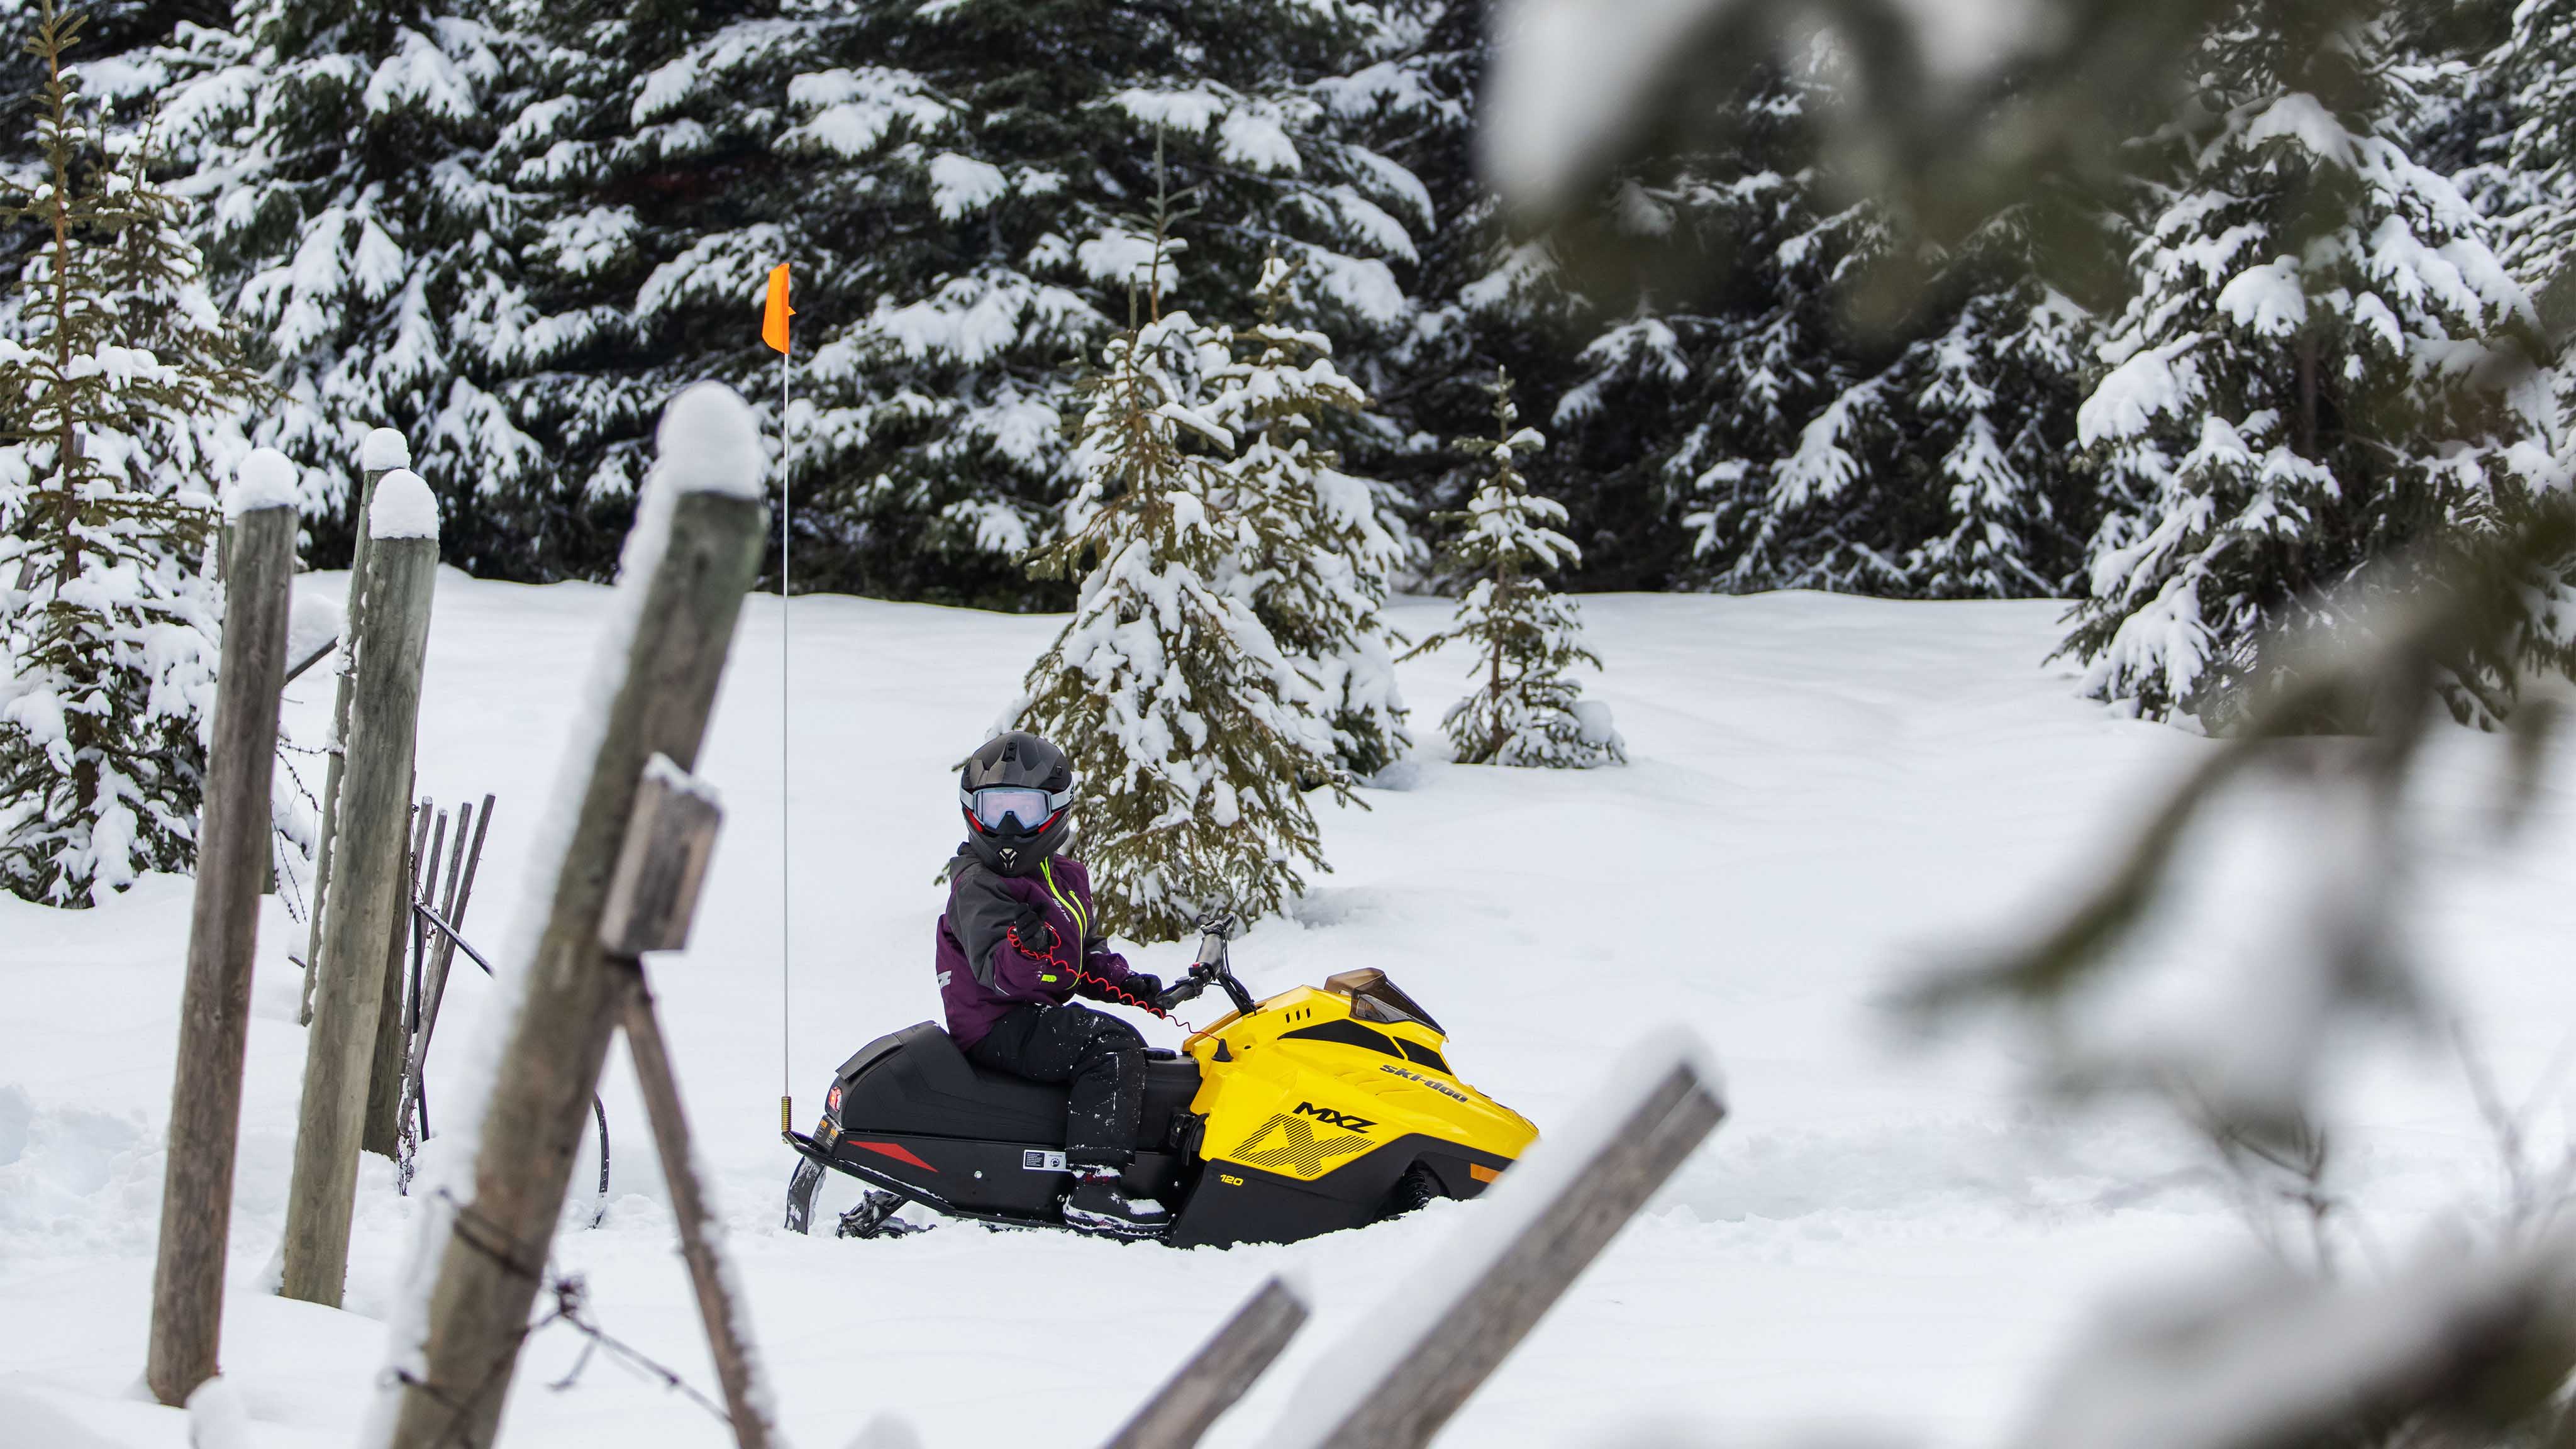 Dieťa objavujúce svet snežných skútrov so svojím Ski-Doo MXZ 120